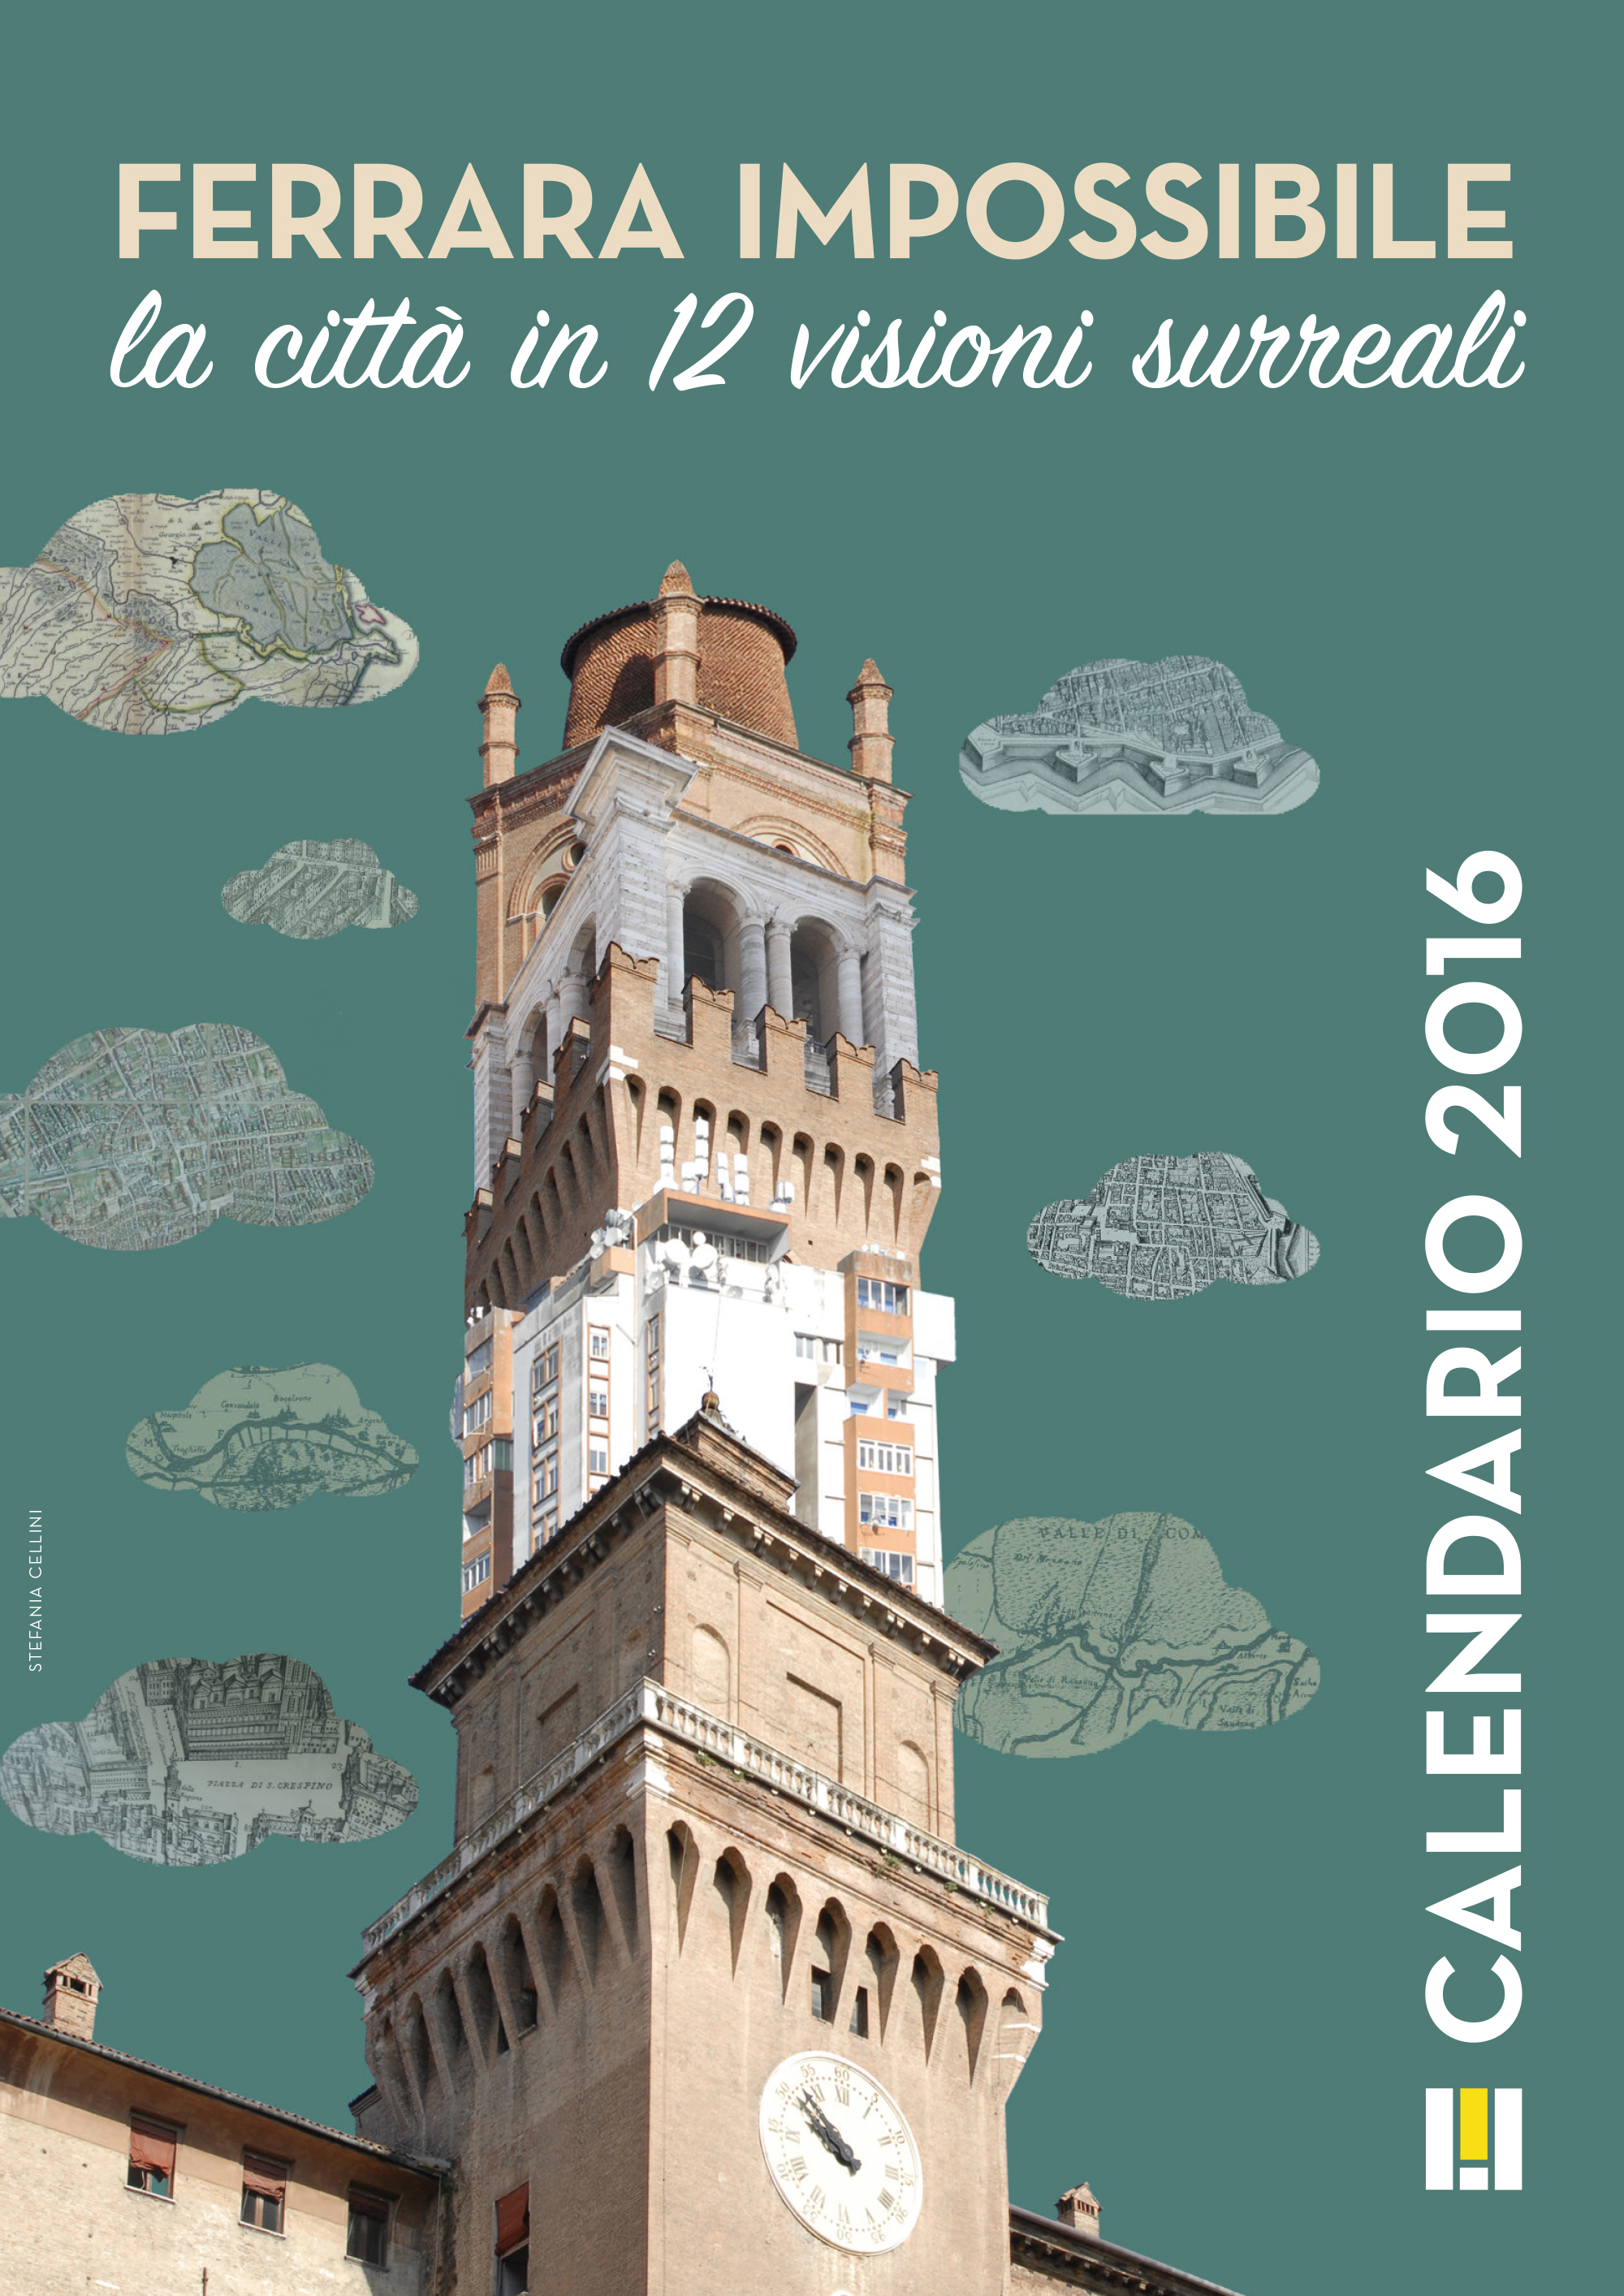 Featured image for “Calendario Ferrara impossibile 2016”